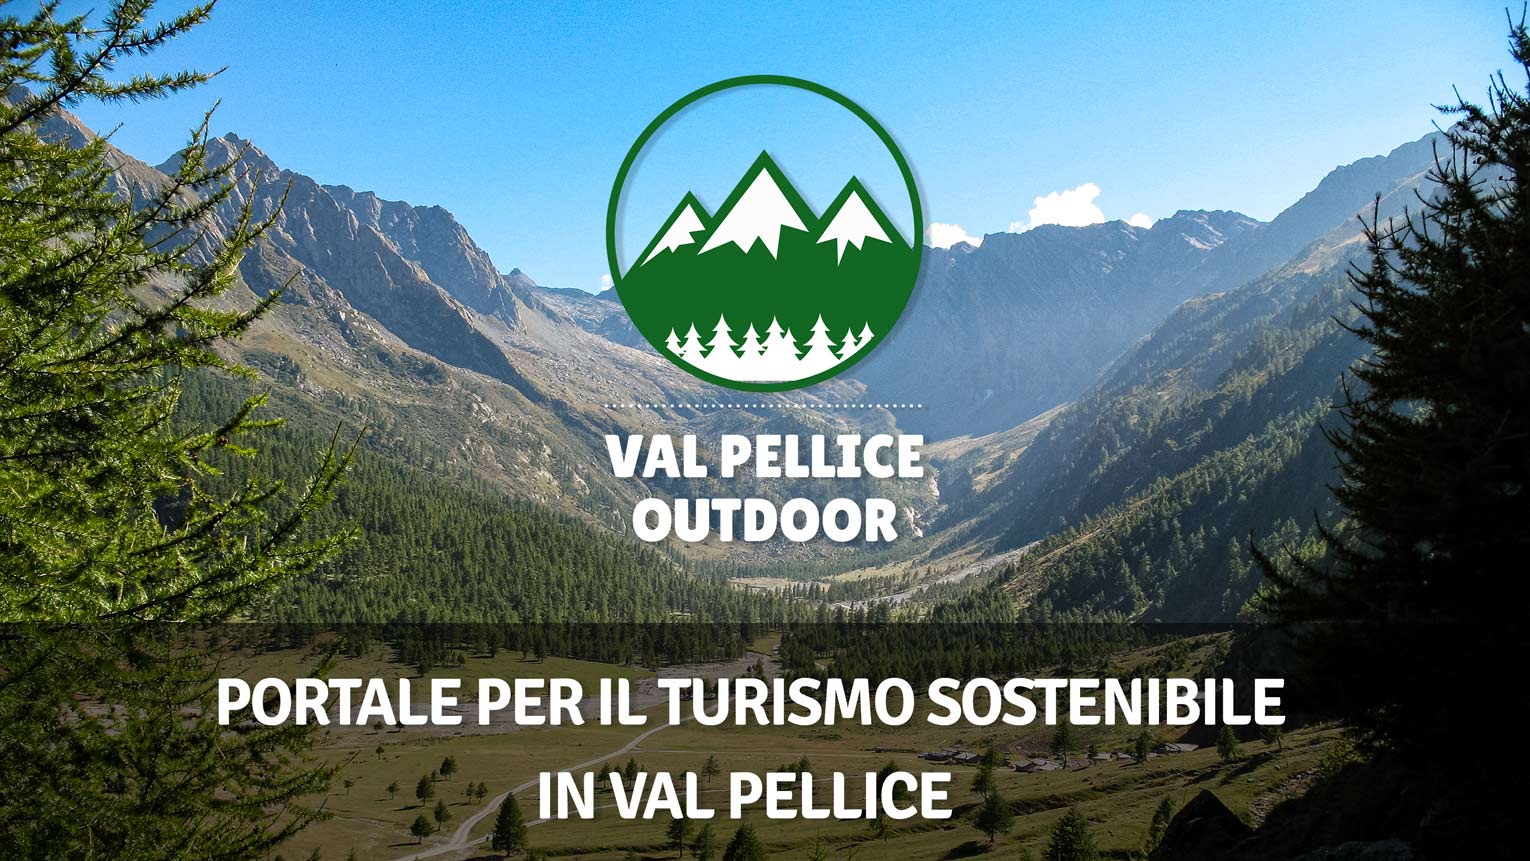 Val Pellice Outdoor - Website per il  Turismo Sostenibile in Val Pellice